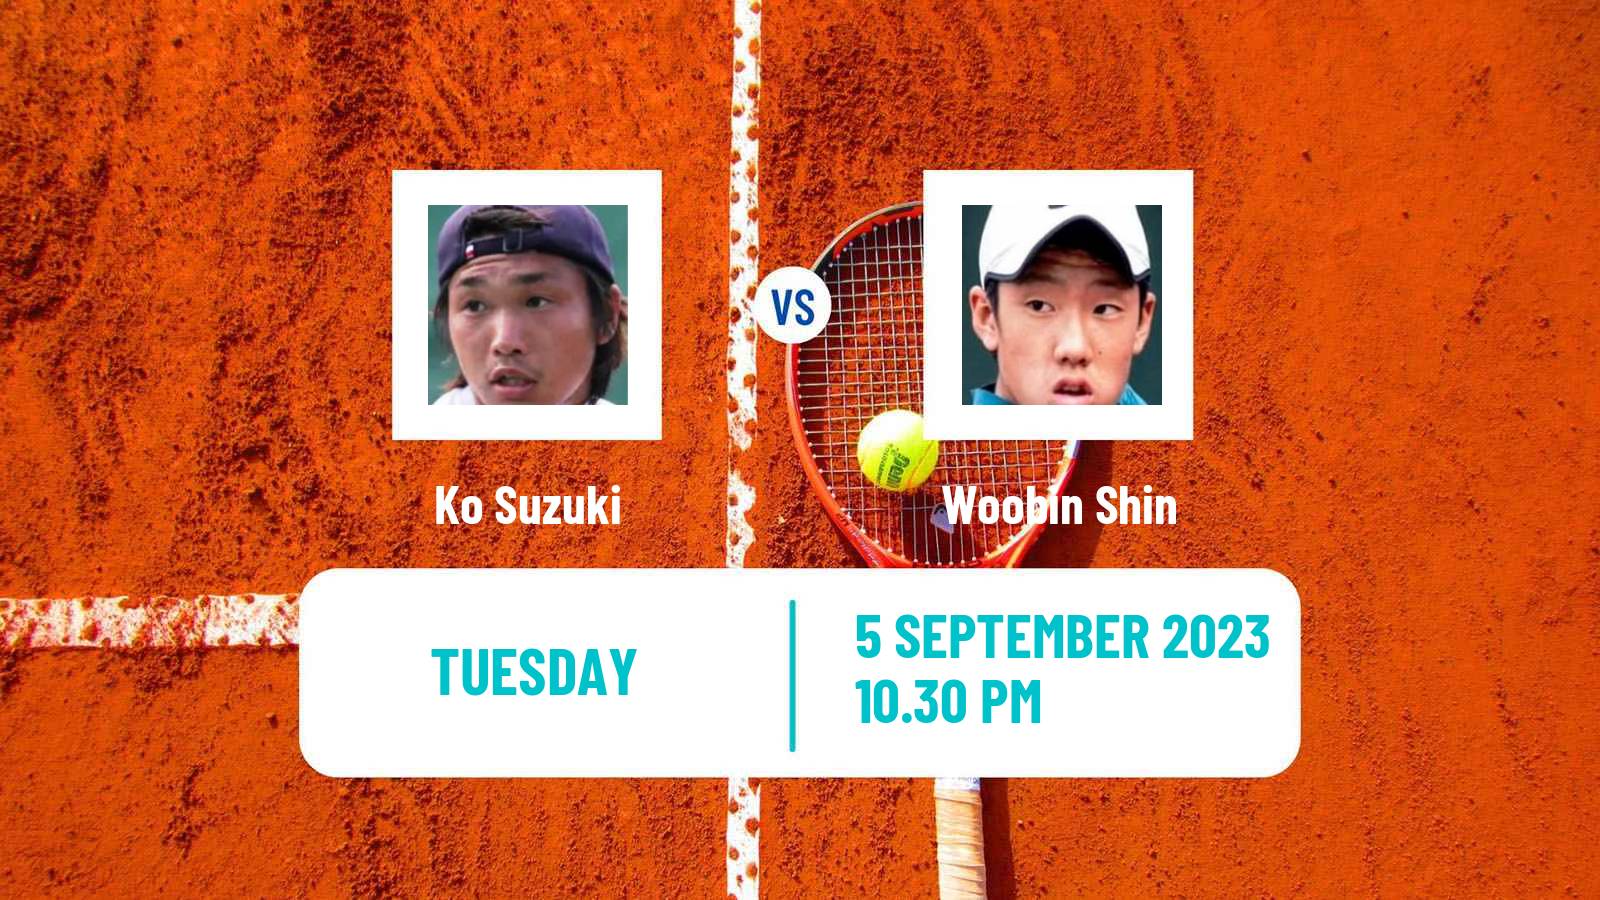 Tennis ITF M25 Sapporo Men Ko Suzuki - Woobin Shin